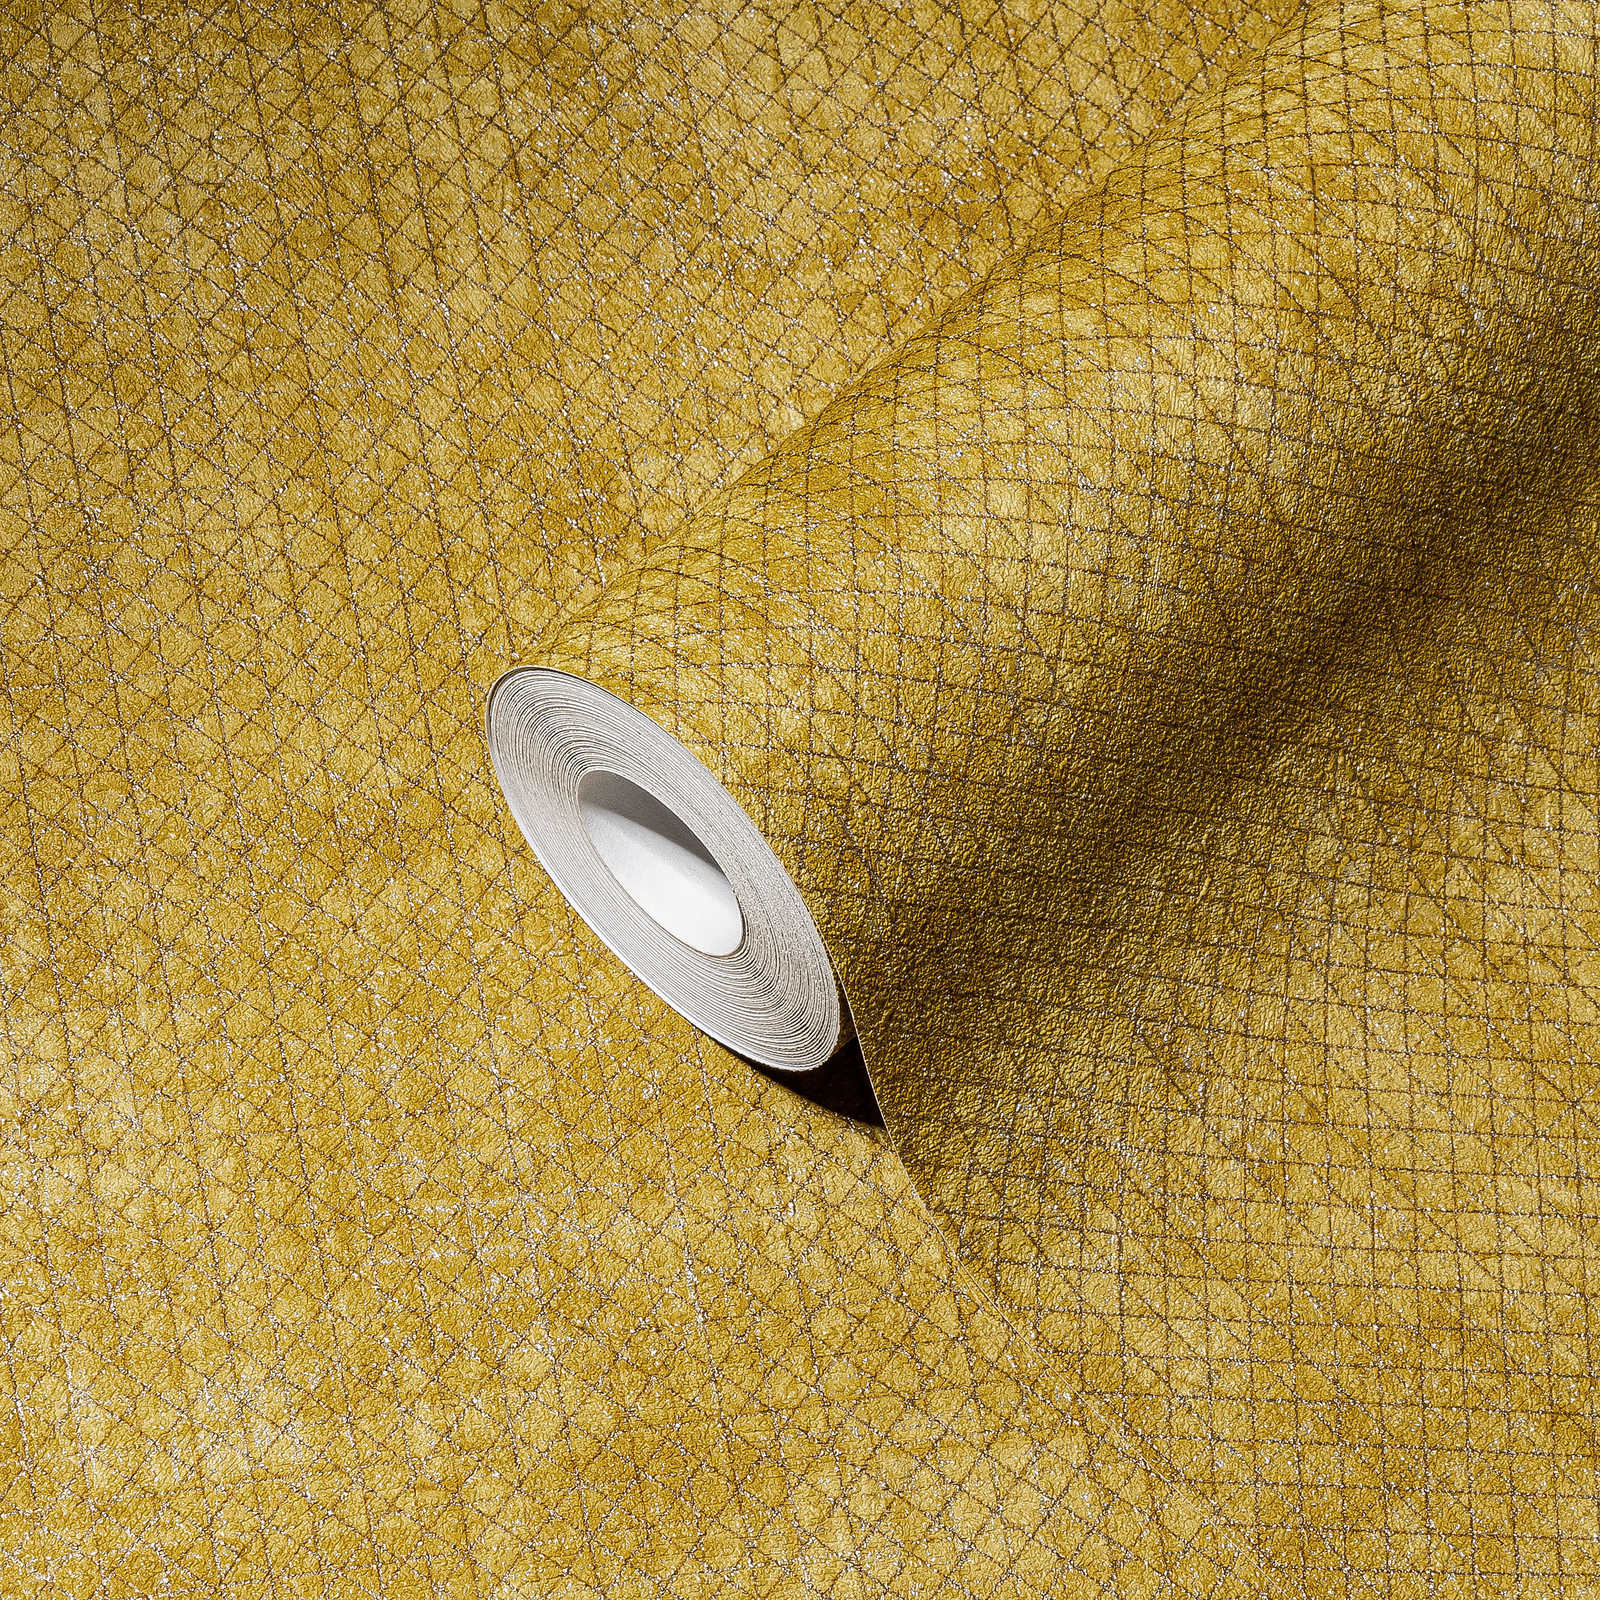             Behang mosterdgeel met metalen structuurpatroon - geel
        